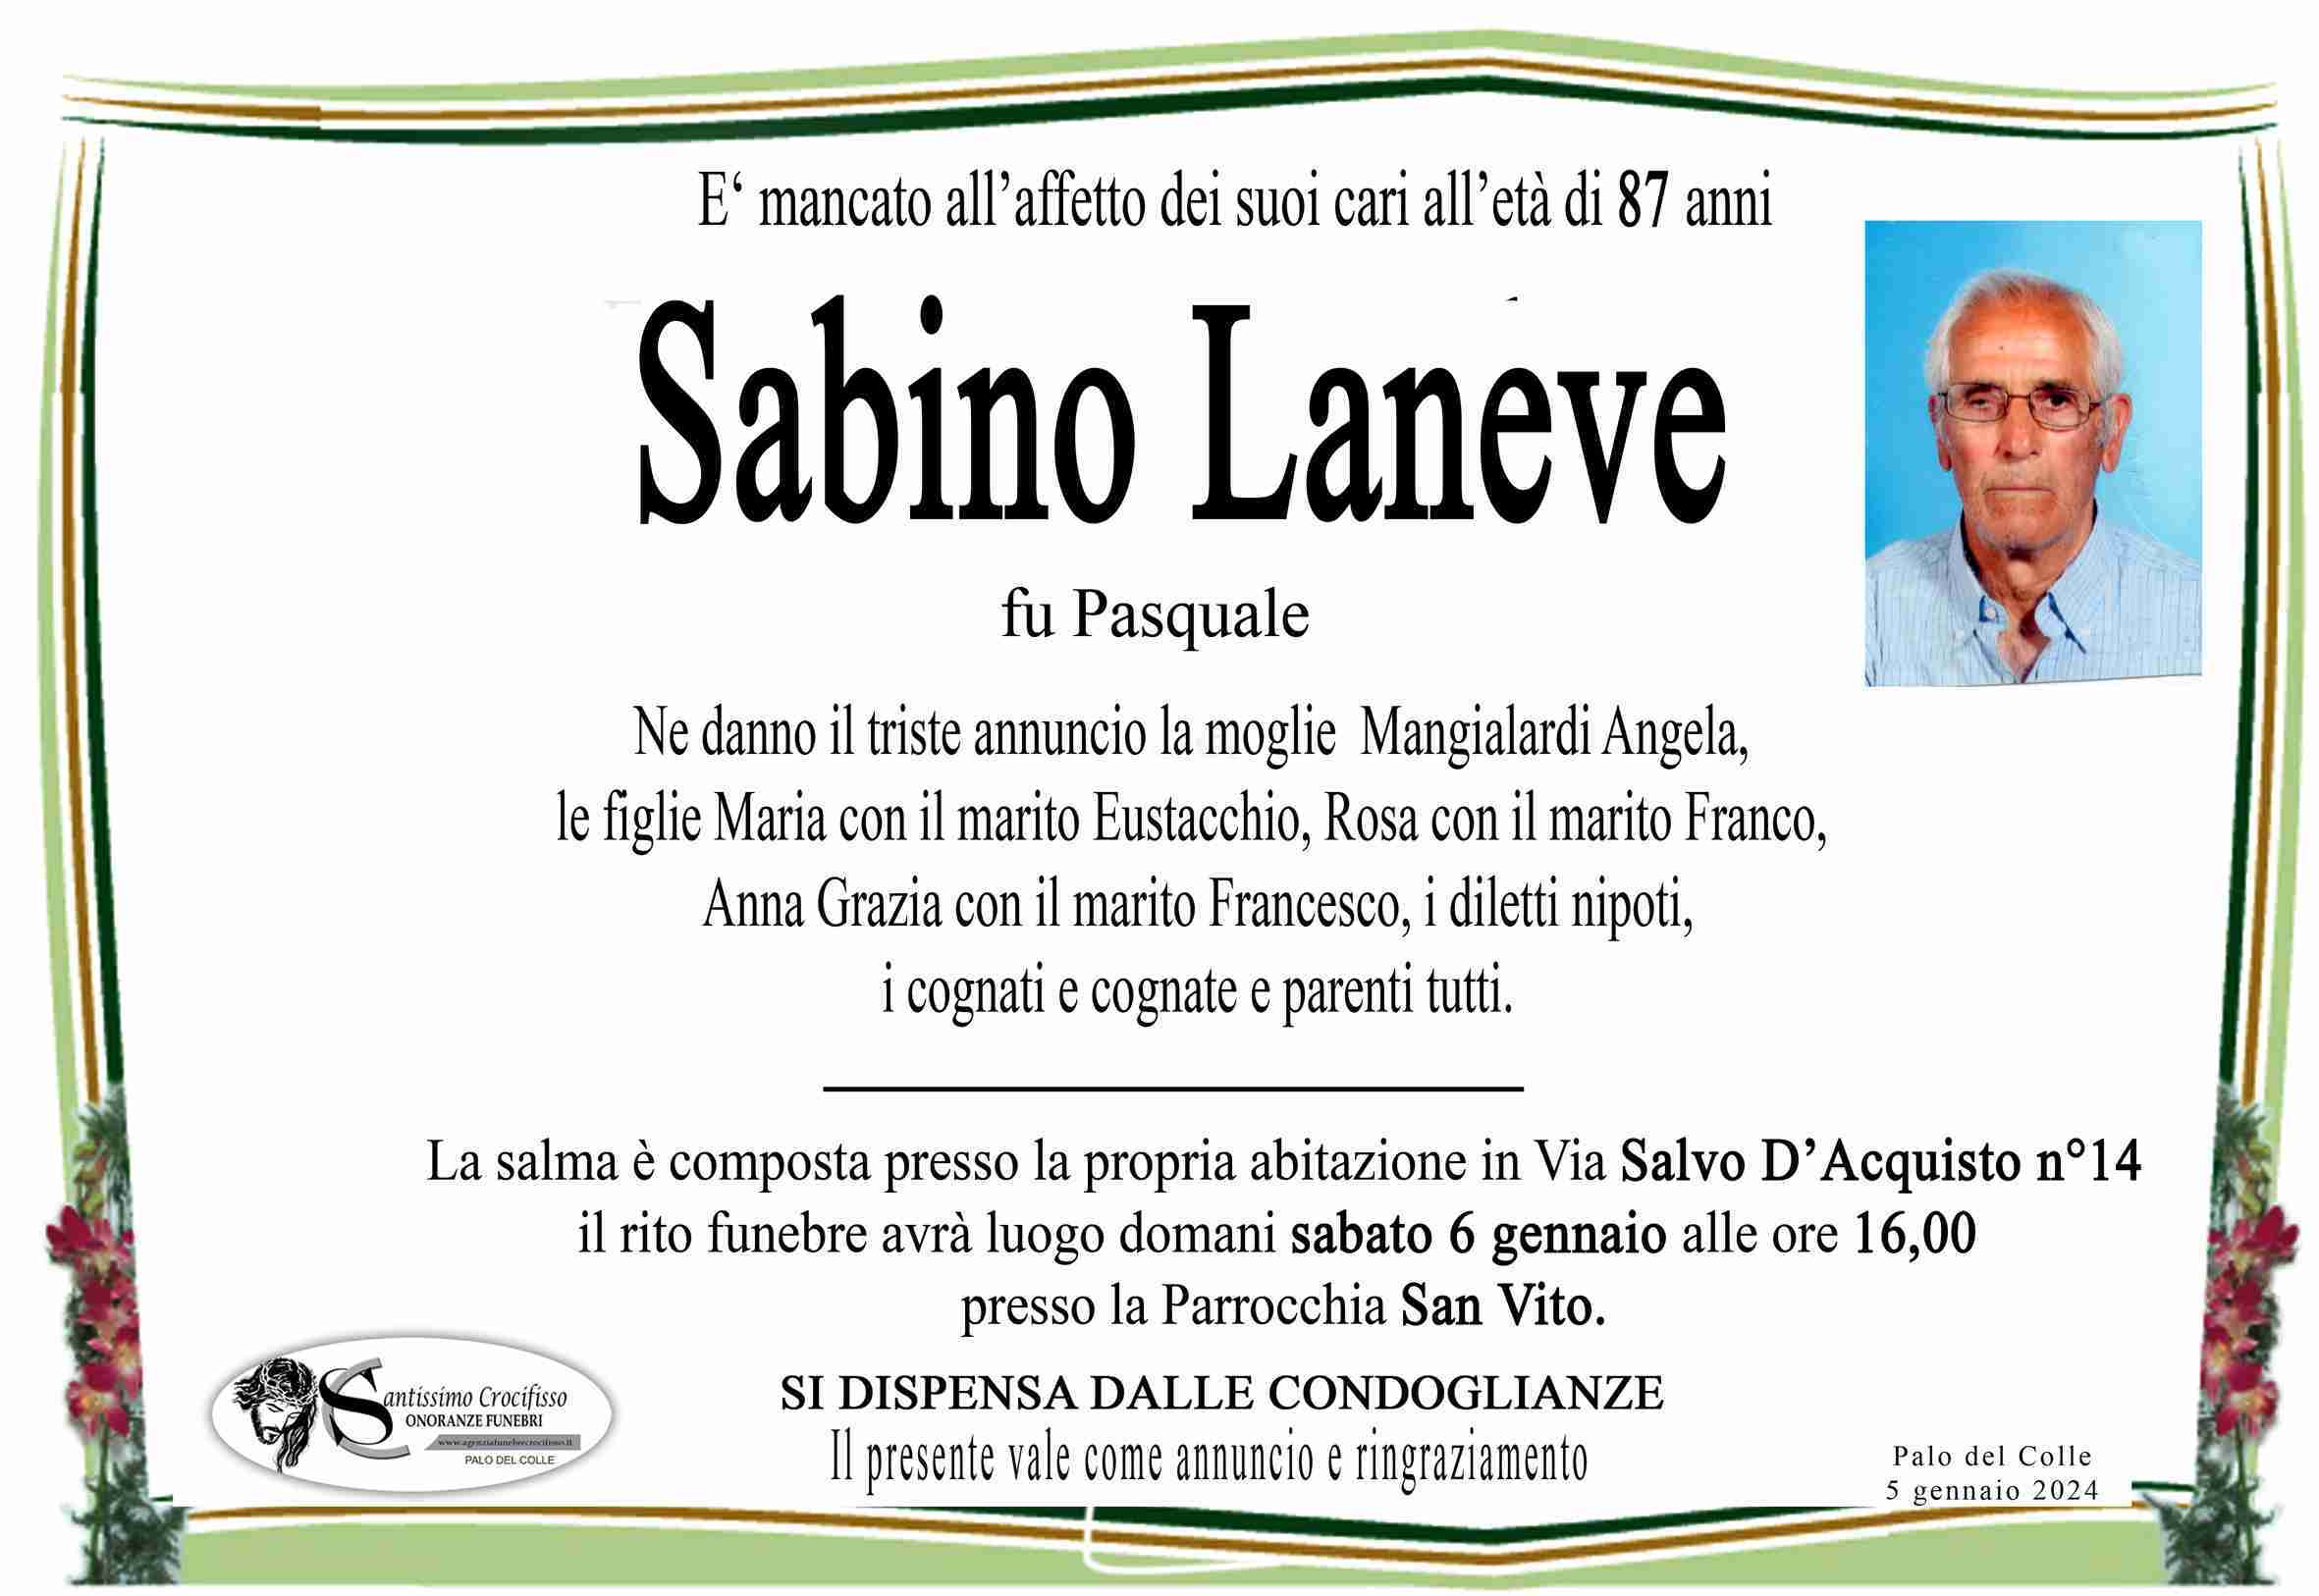 Sabino Laneve